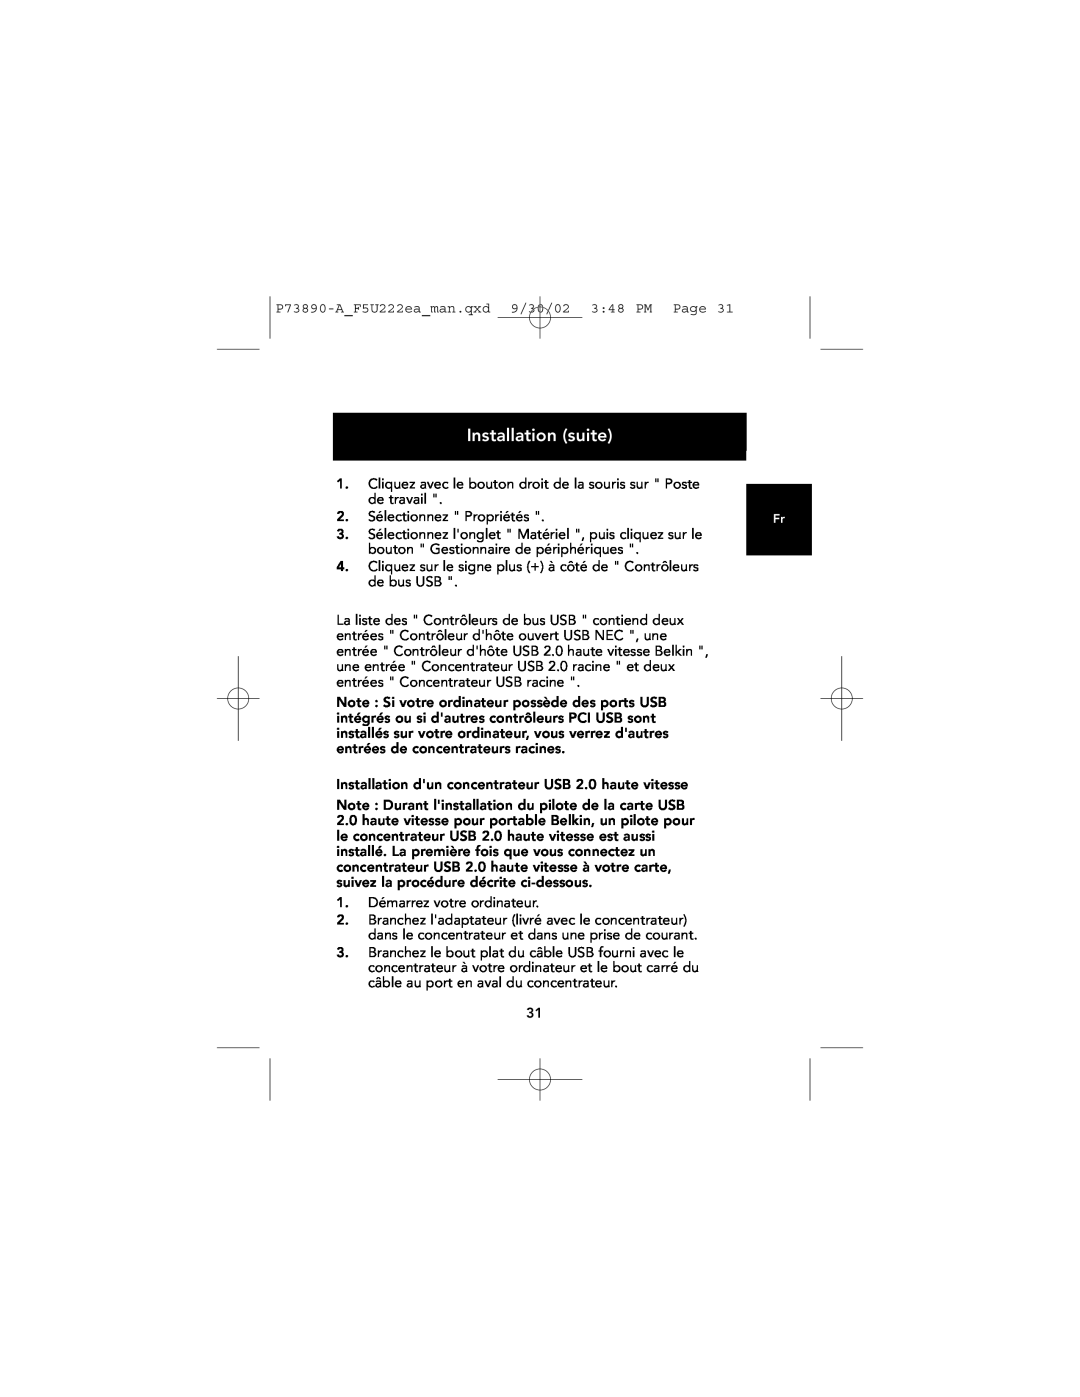 Belkin P73890EA-A manual 2. Sélectionnez Propriétés, Installation suite 